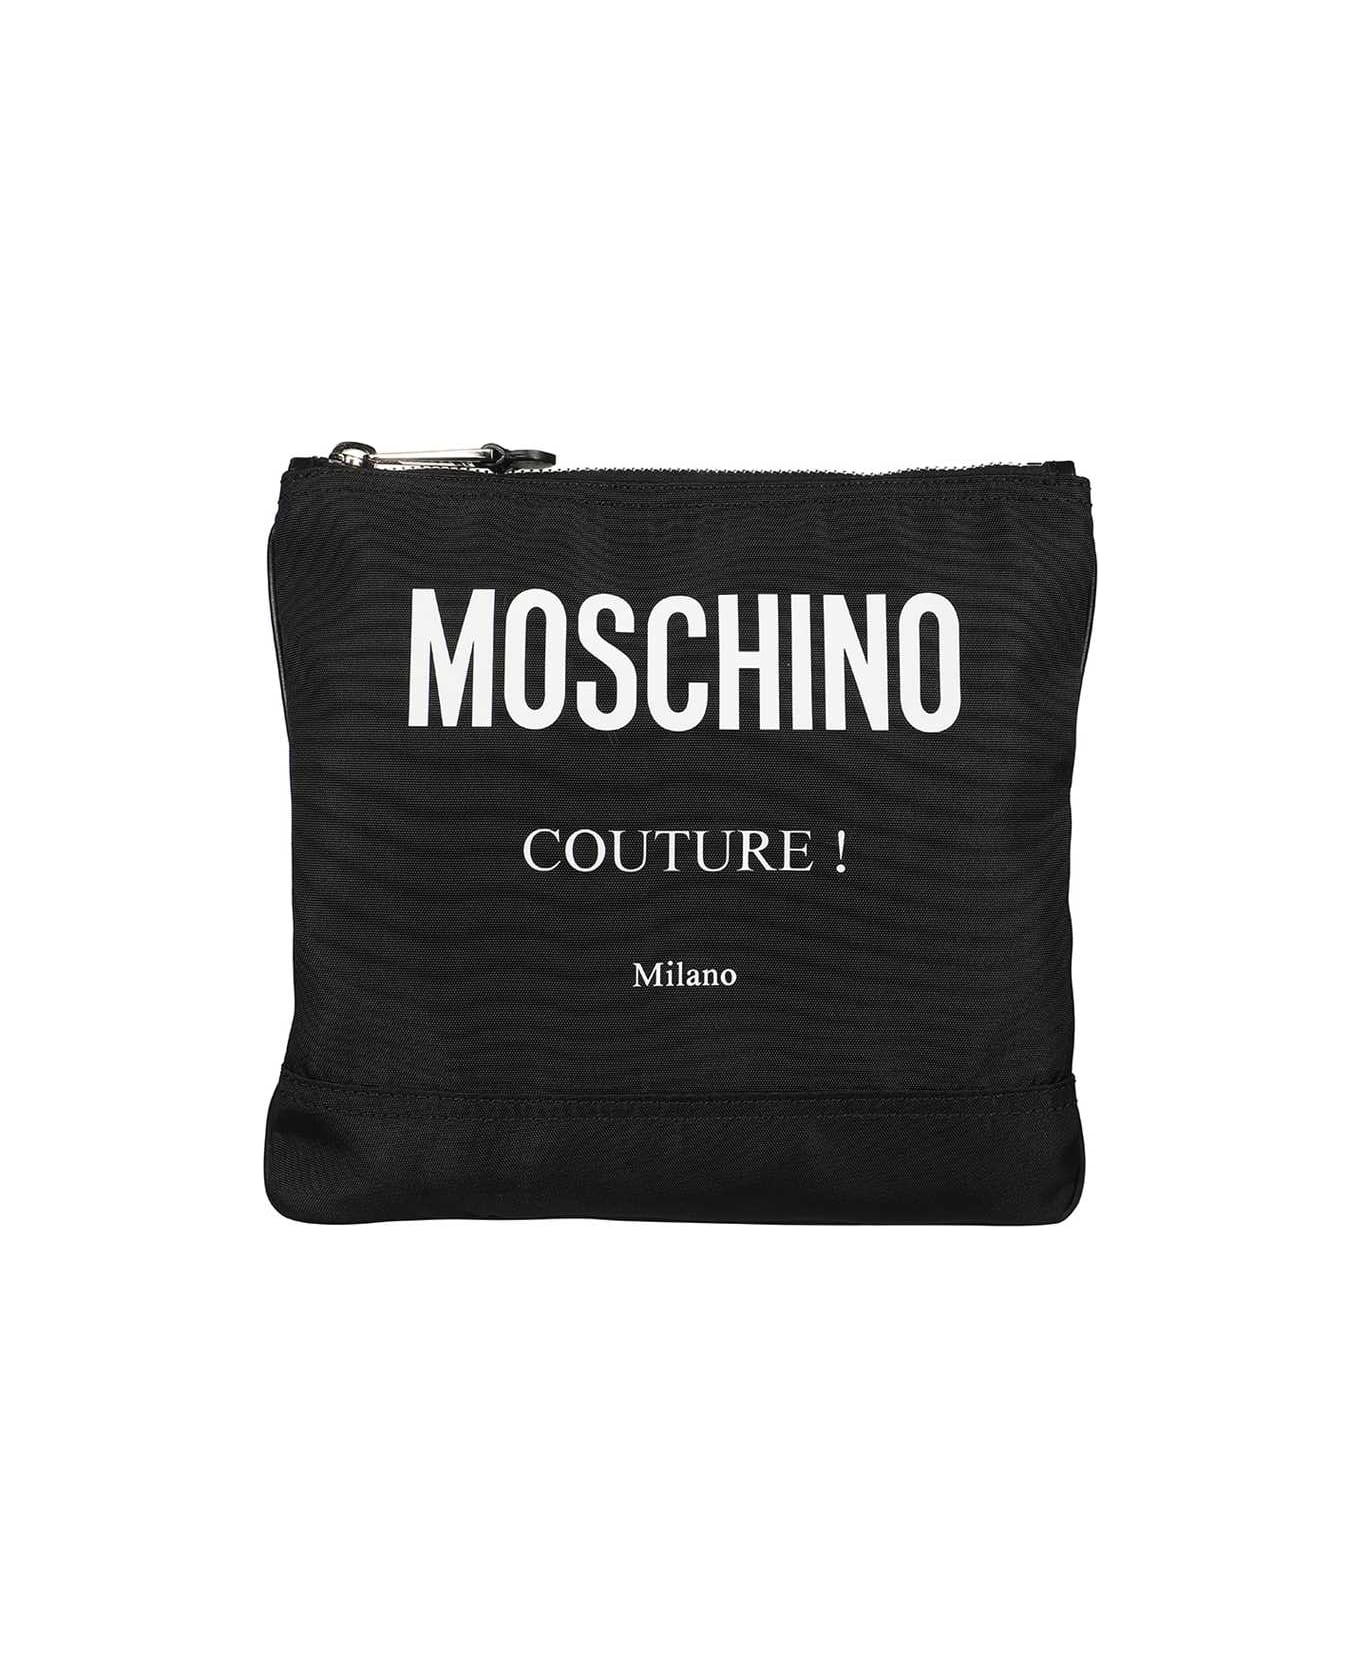 Moschino Messenger Bag With Logo - black